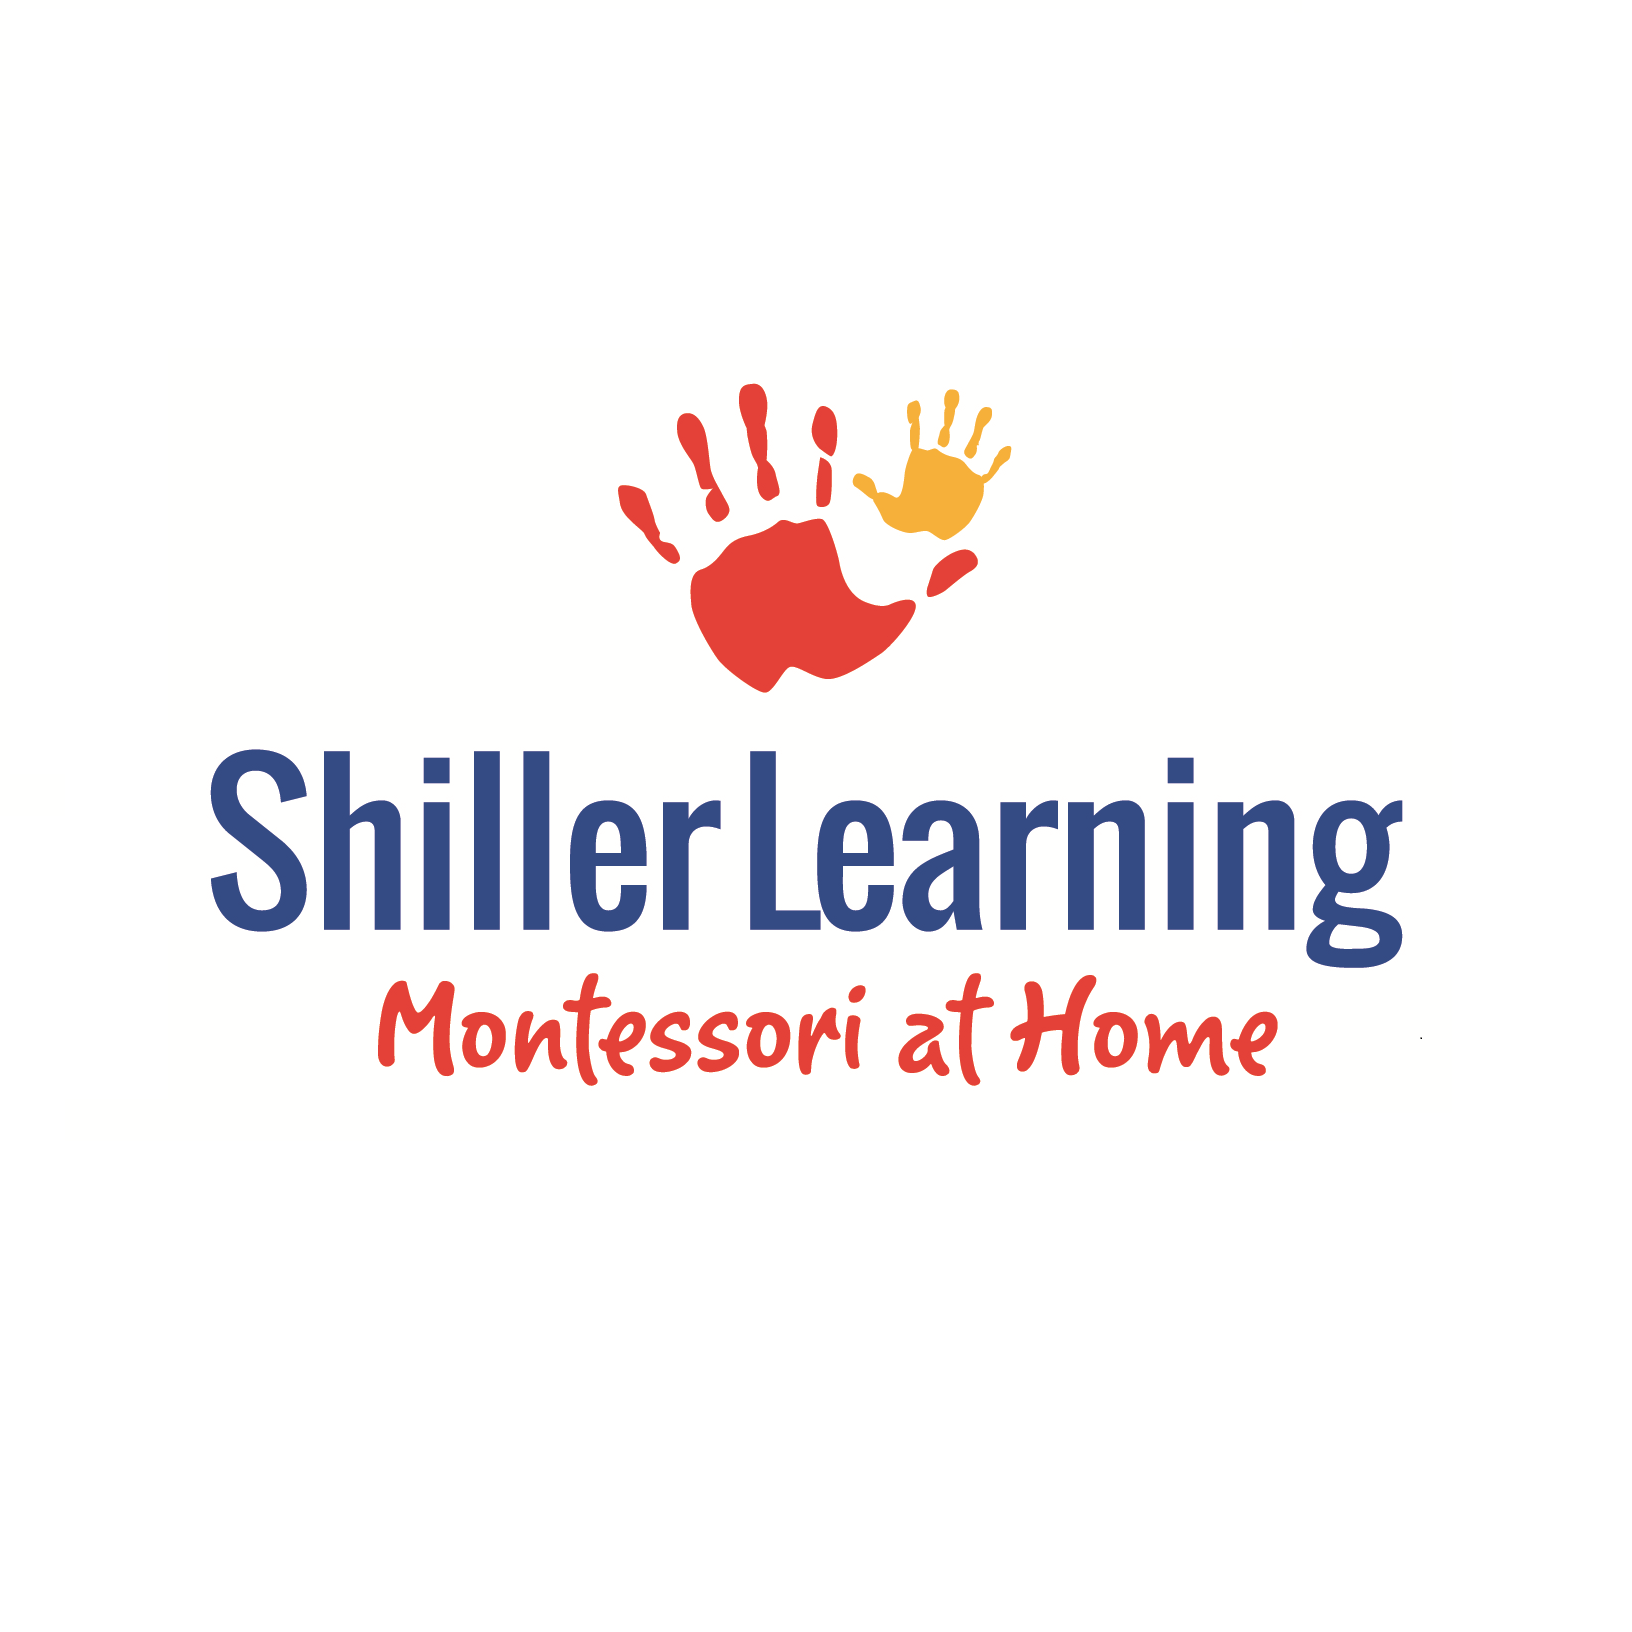 Shiller Learning